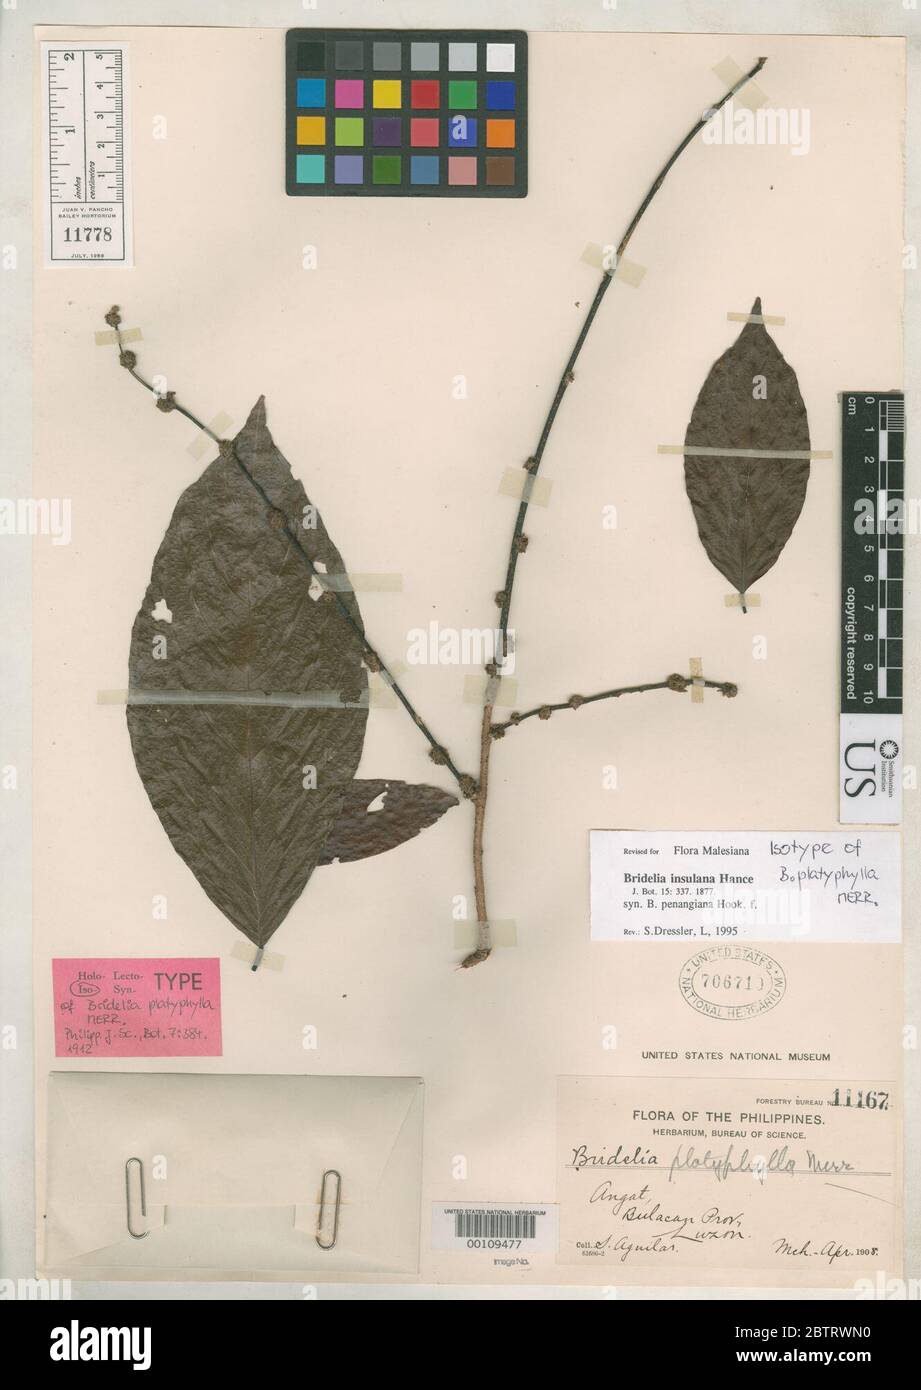 Bridelia platyphylla Merr. Stock Photo